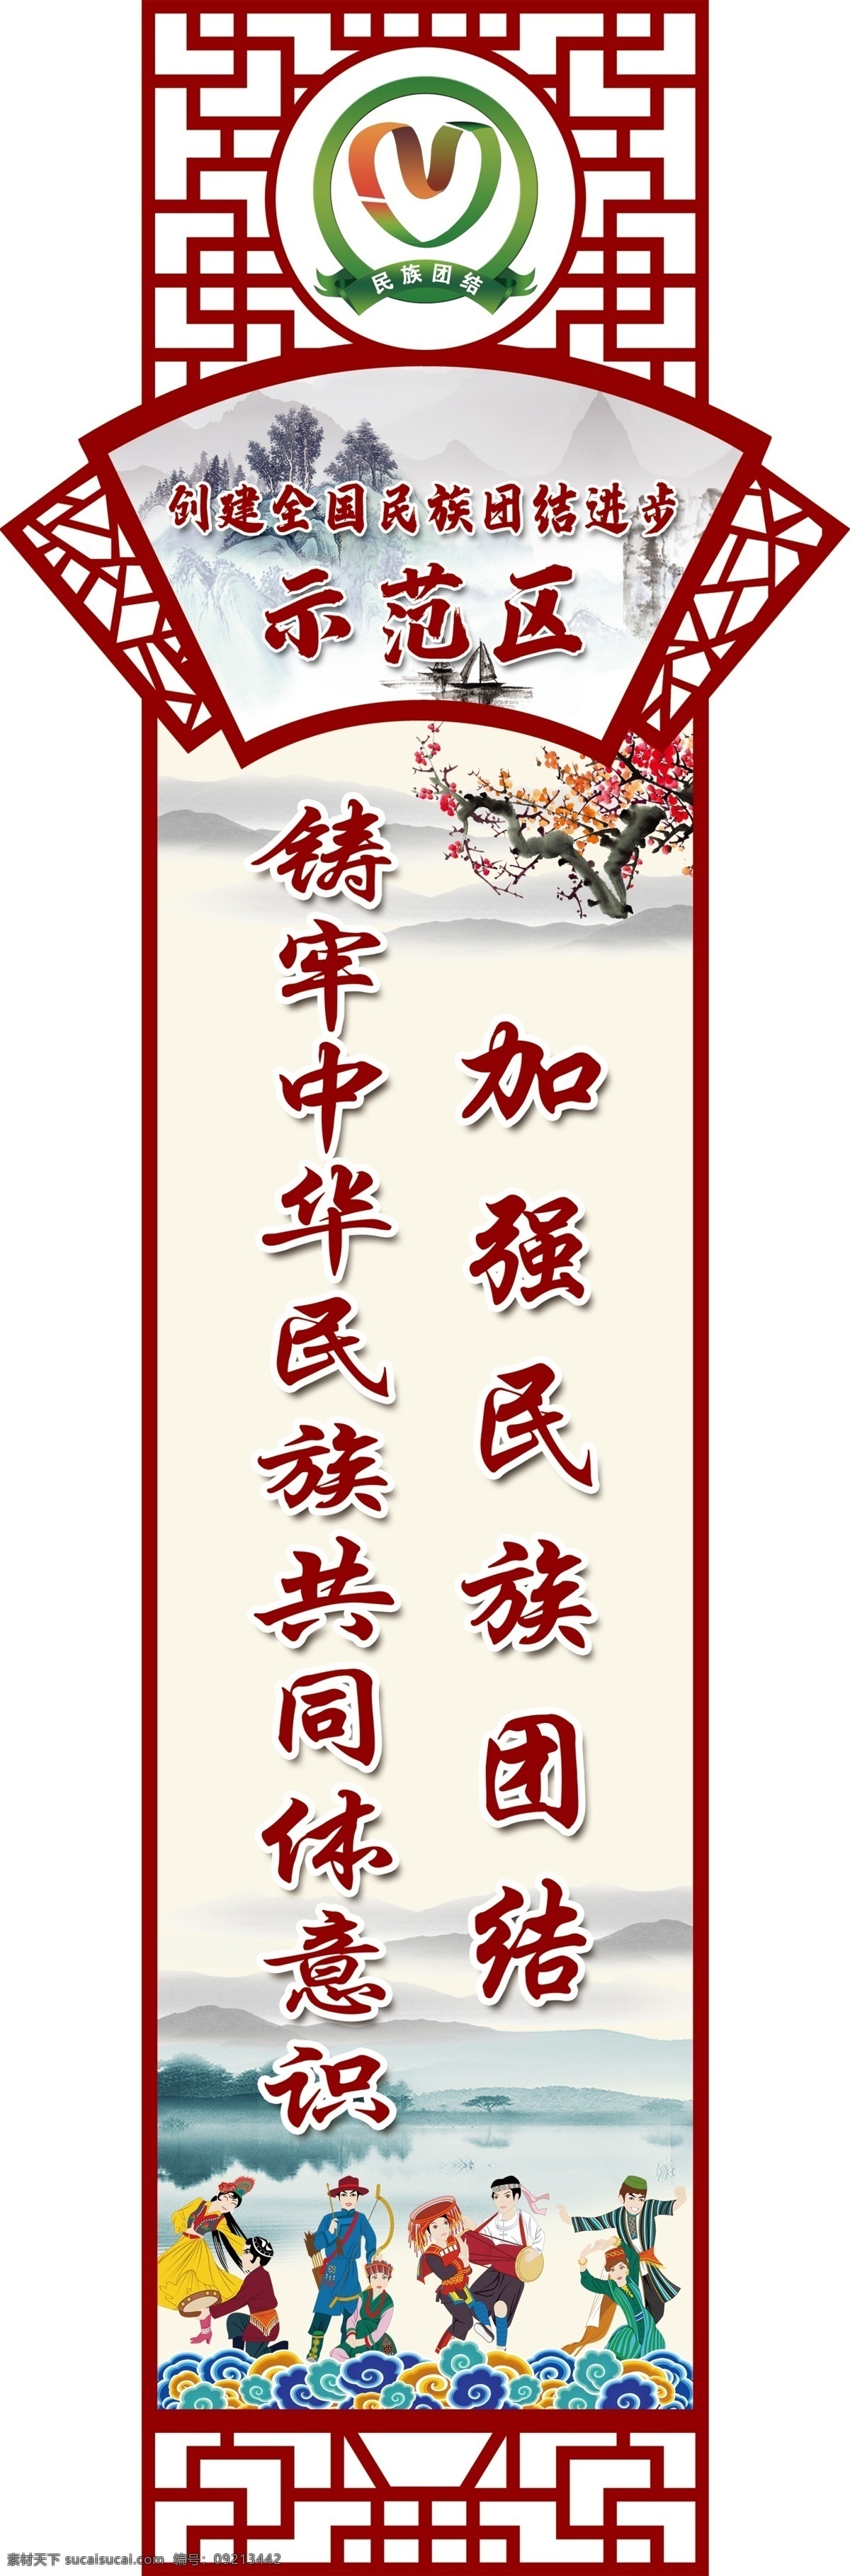 民族 团结 标语 民族团结 民族团结标语 中国风 民族团结宣传 展板